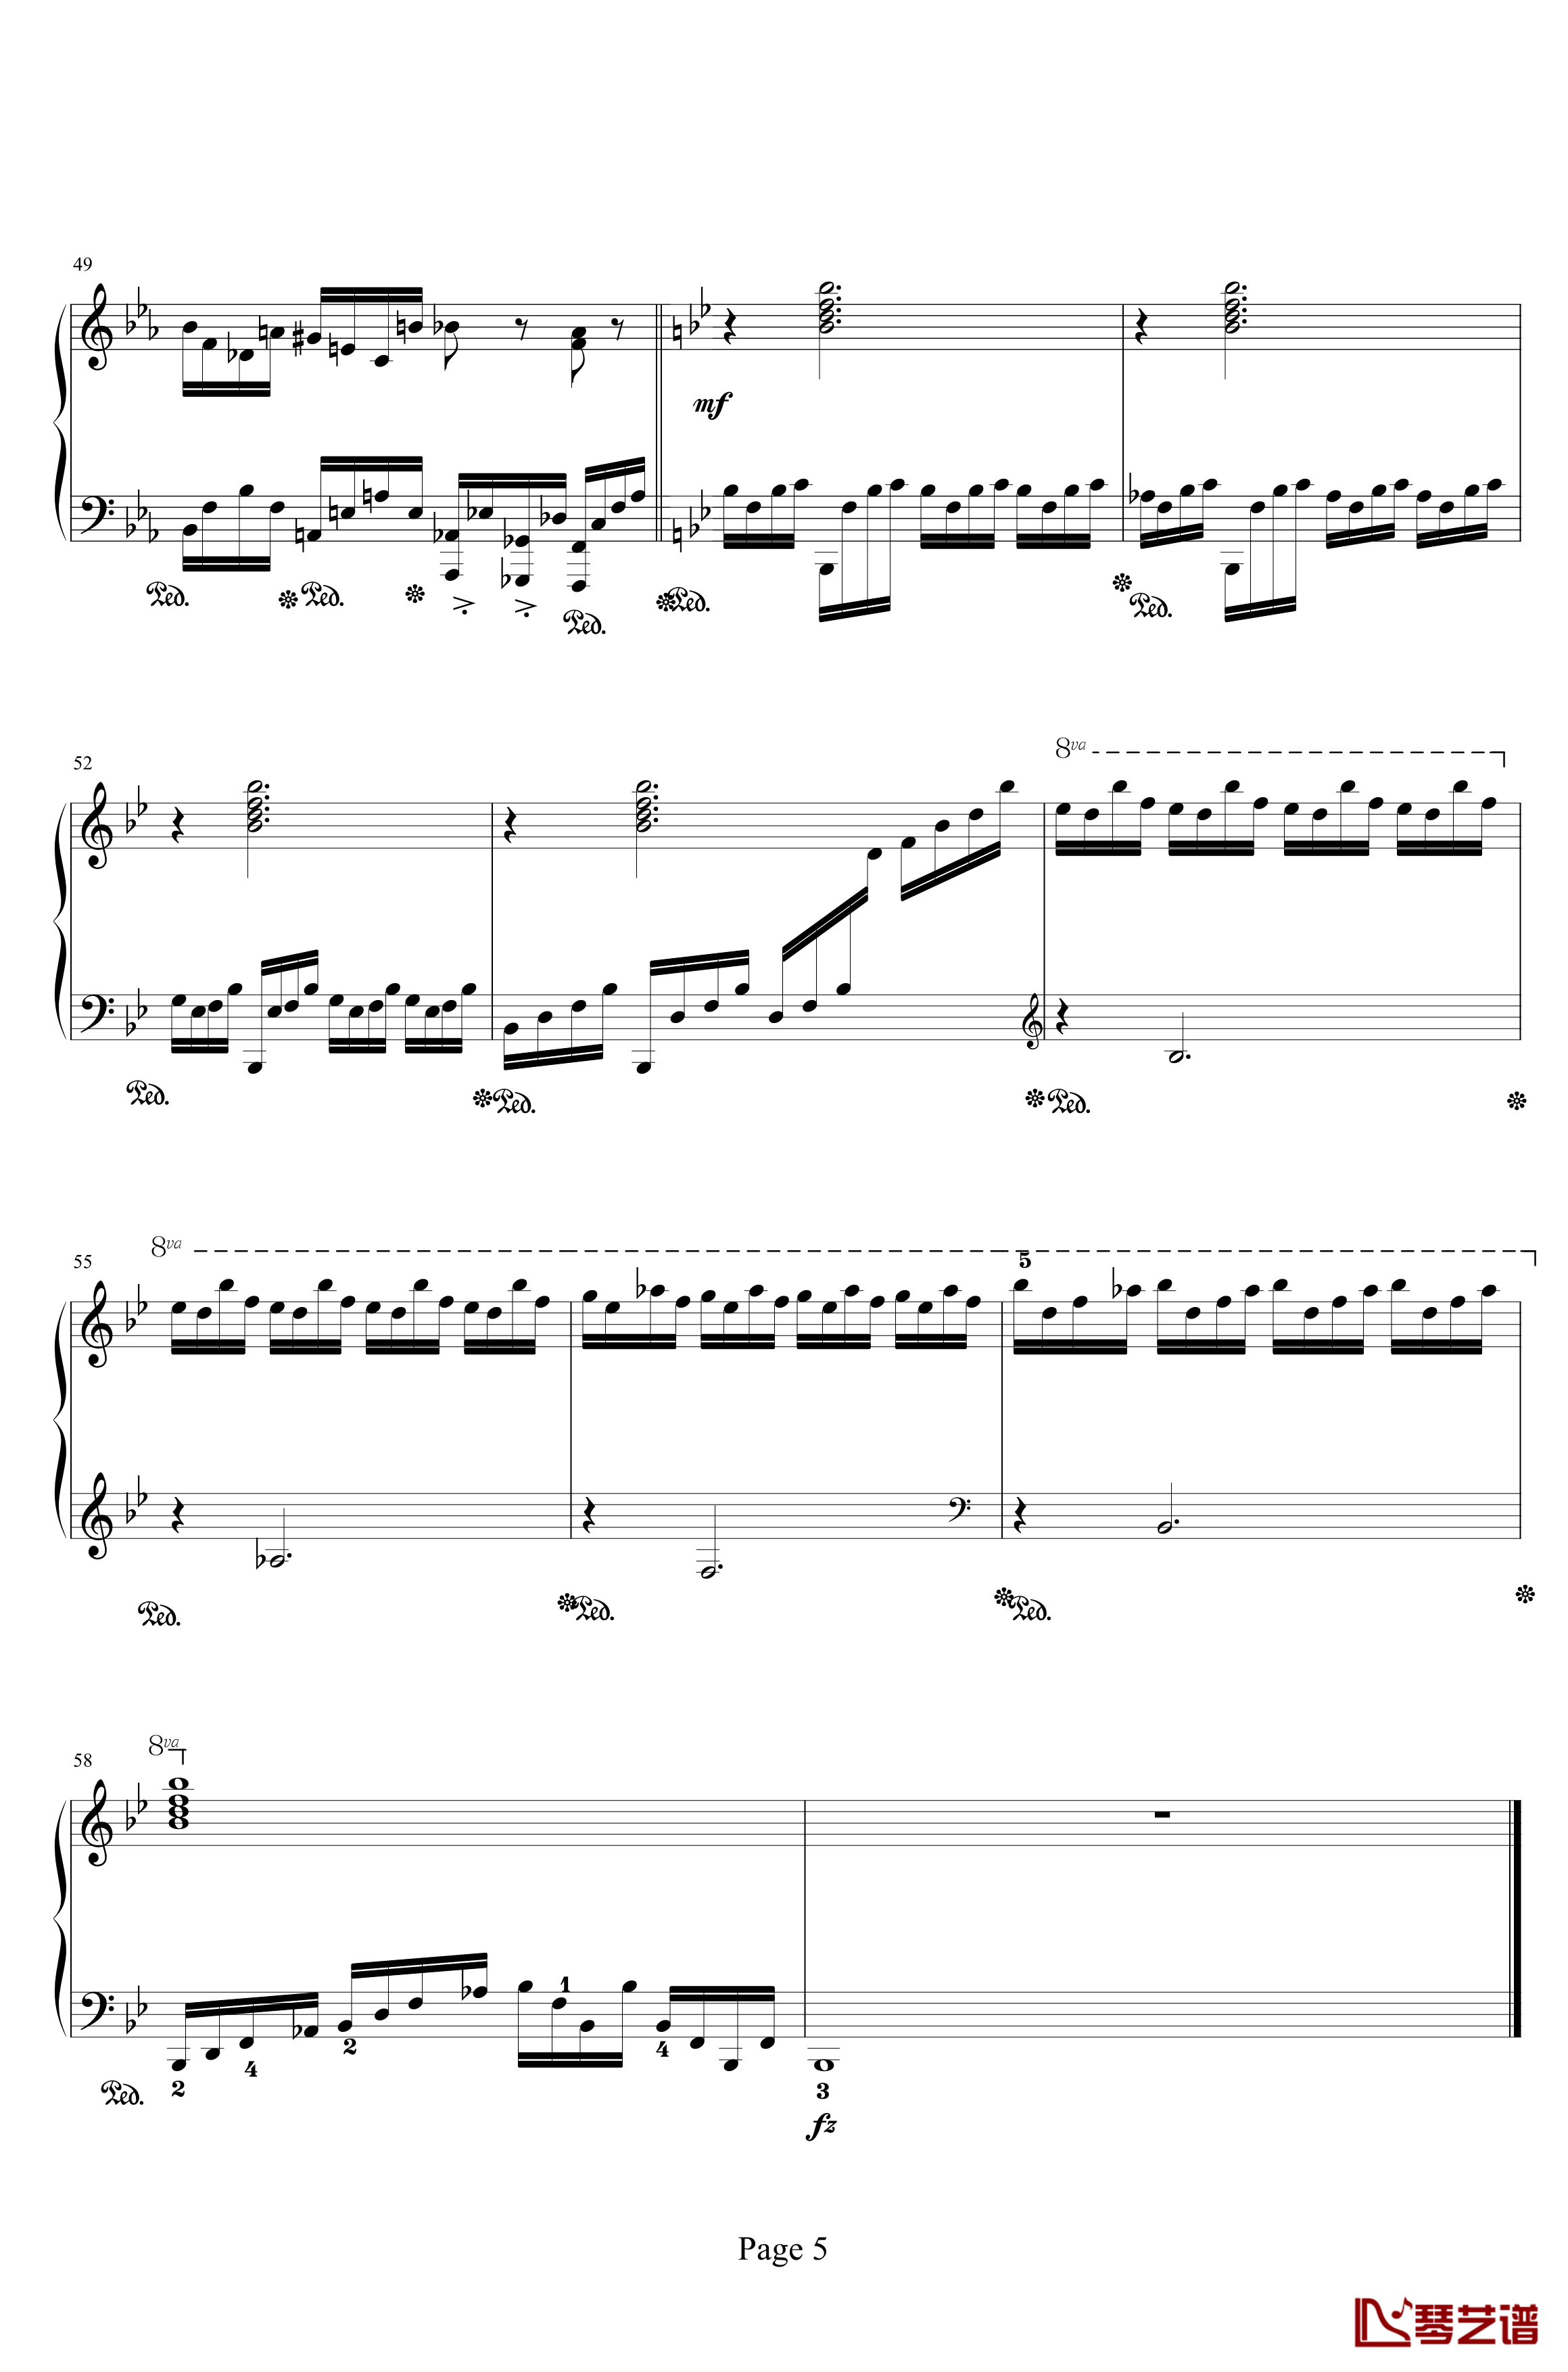 时空幻想练习曲钢琴谱-Ⅰ-晨曦阿西5